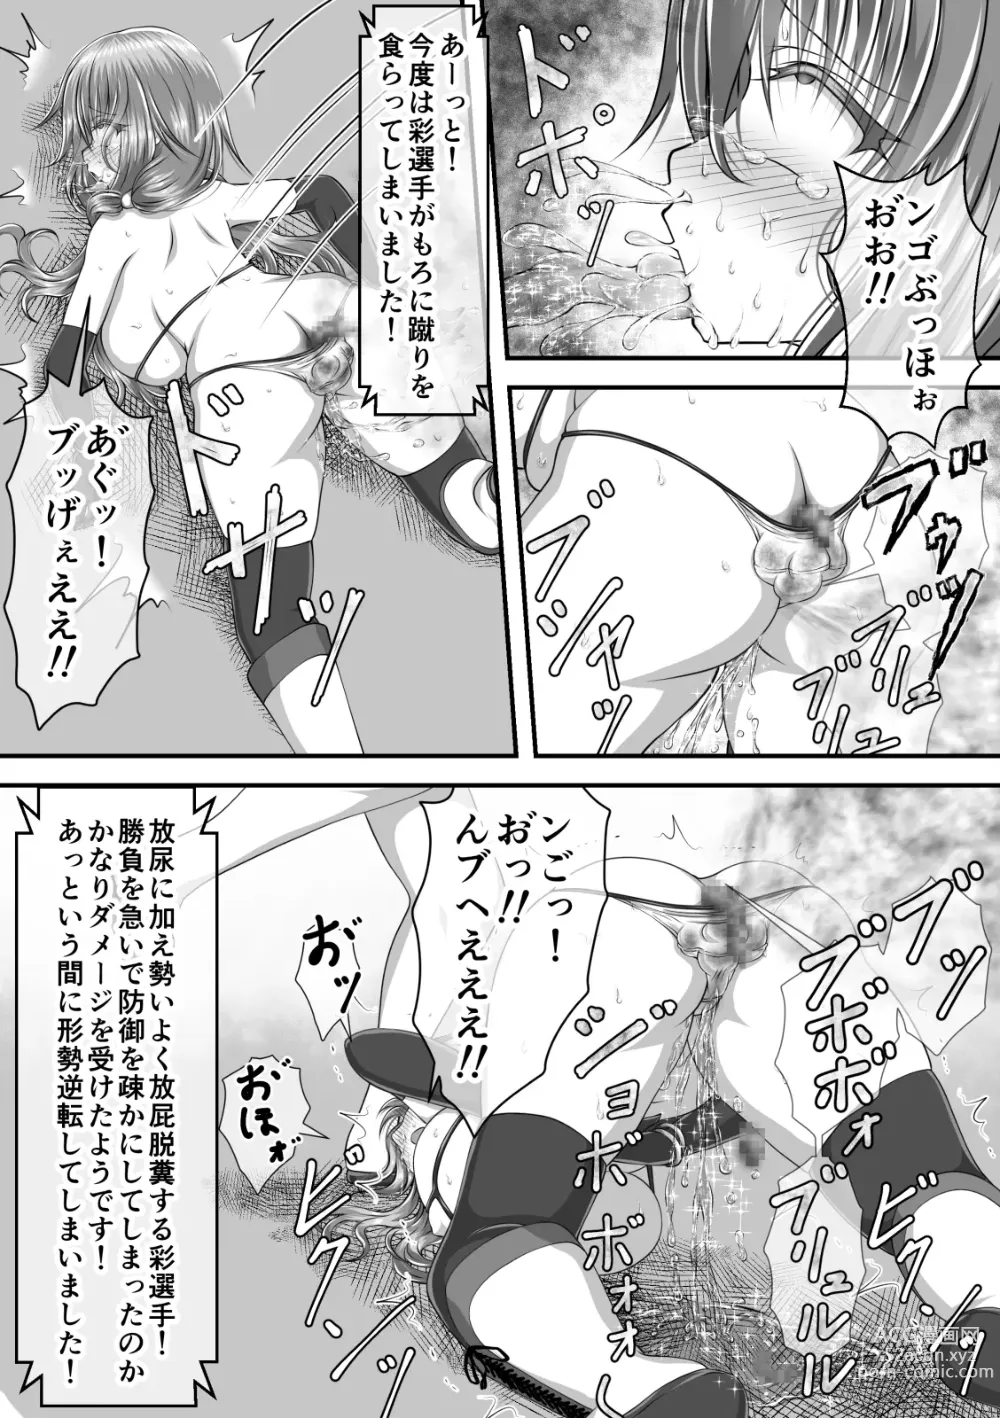 Page 76 of doujinshi Shikkin Tougi